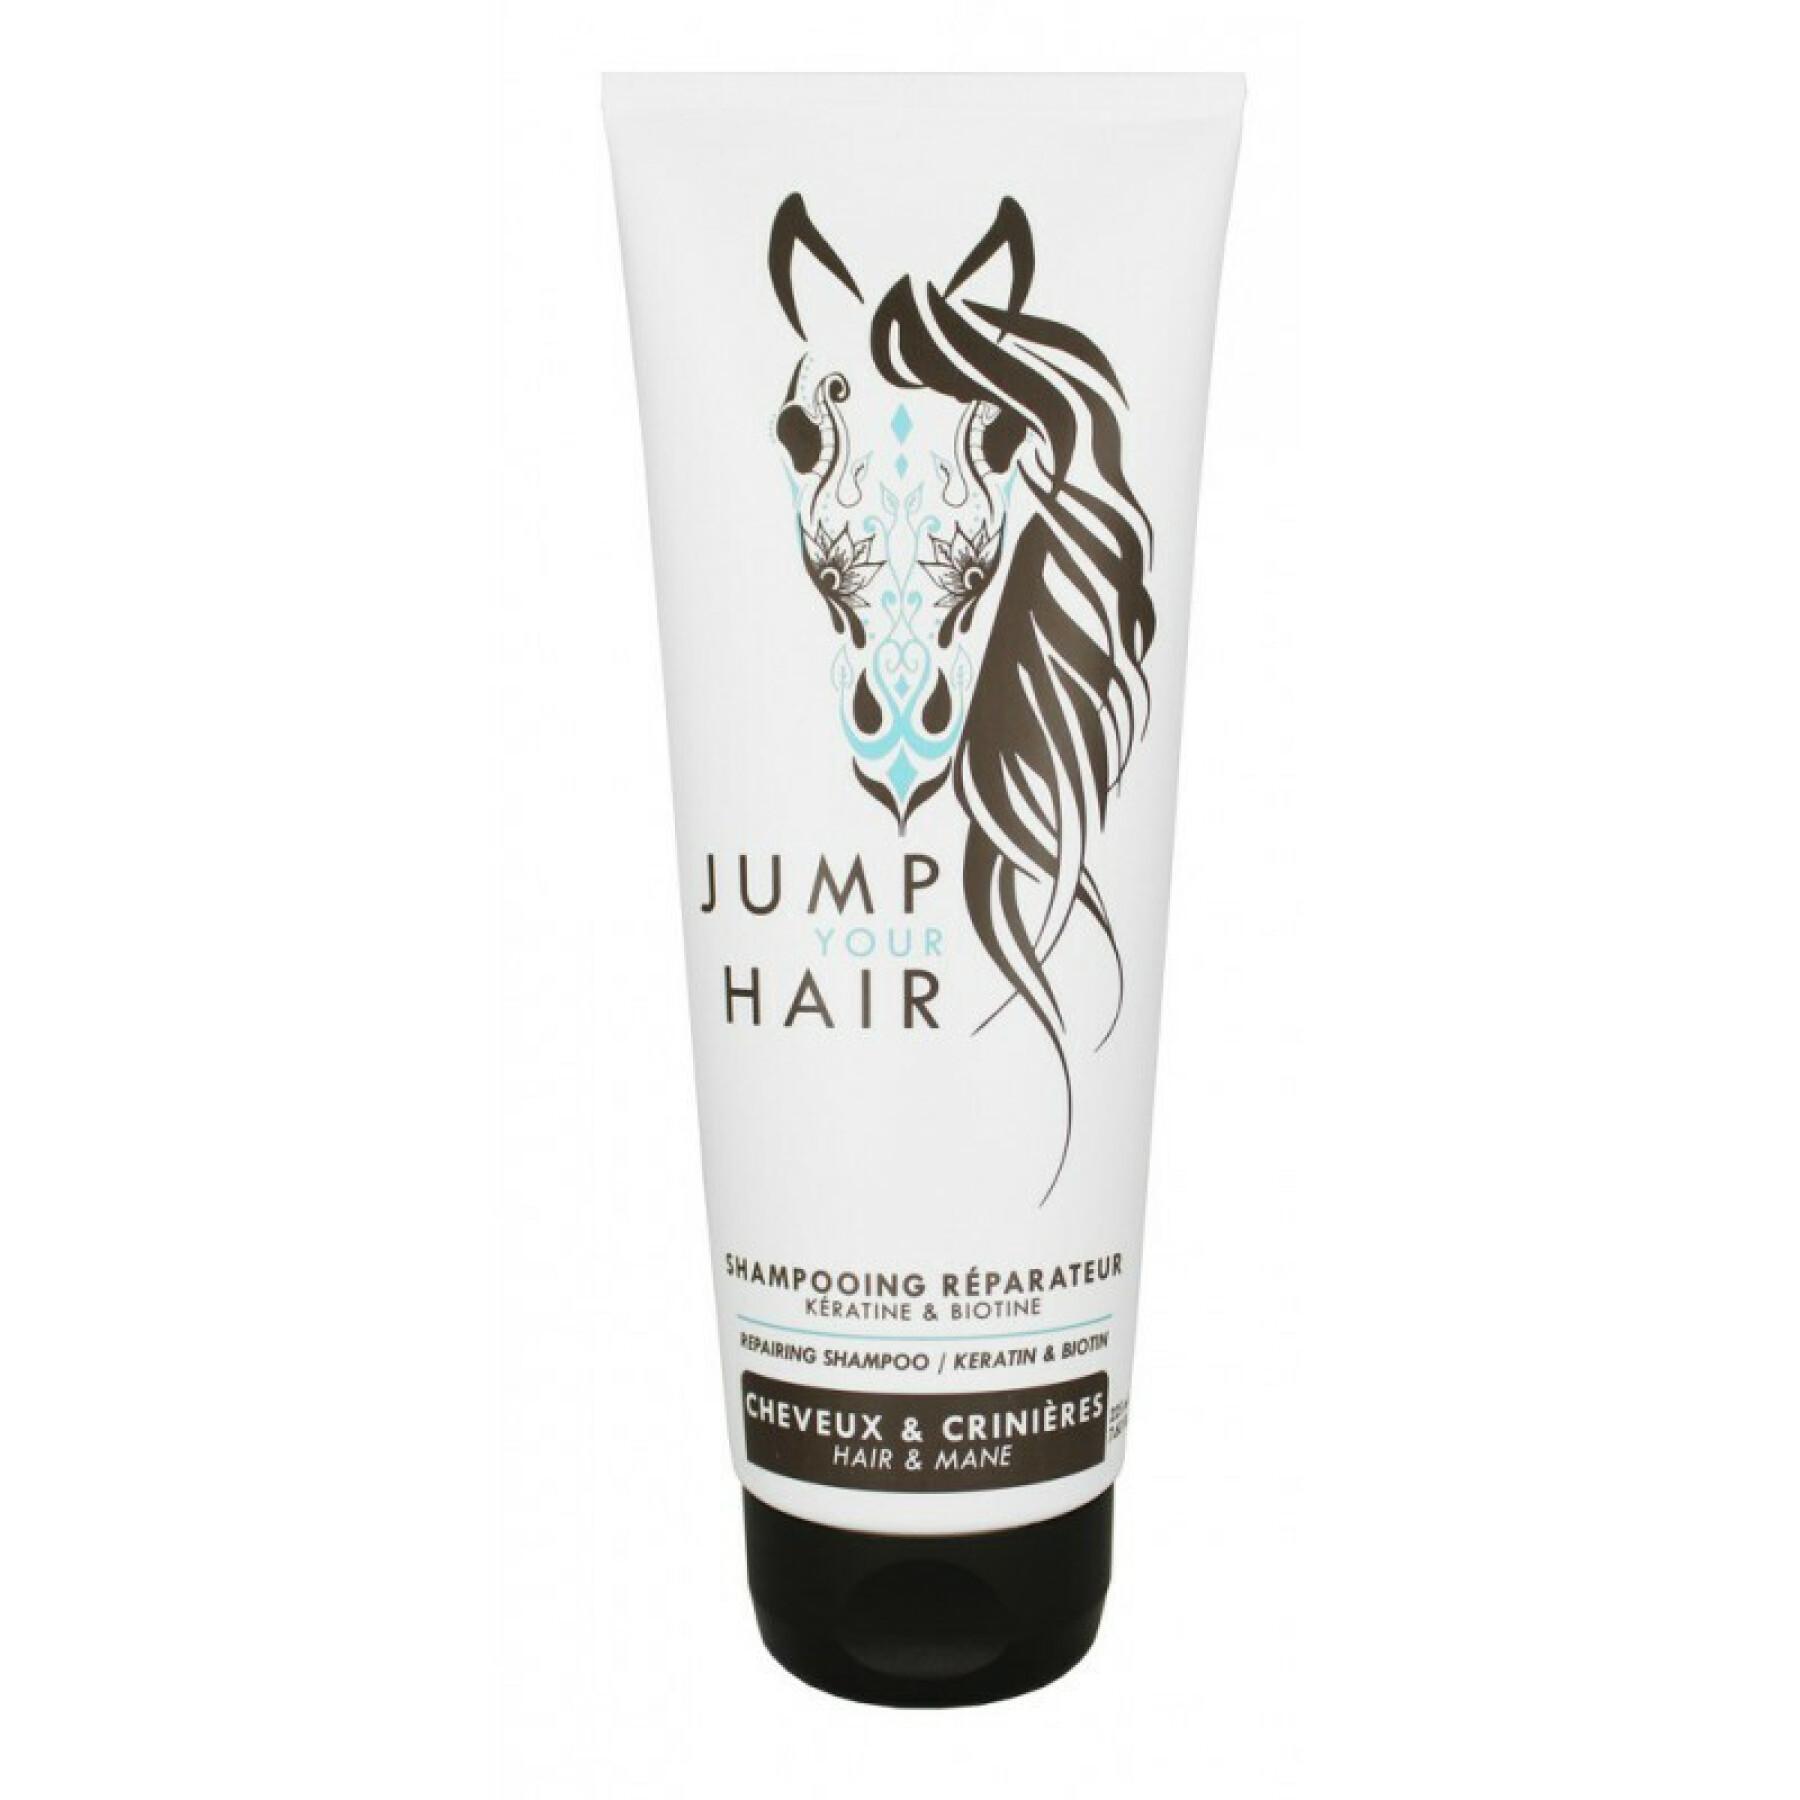 Repairing horse shampoo Jump Your Hair